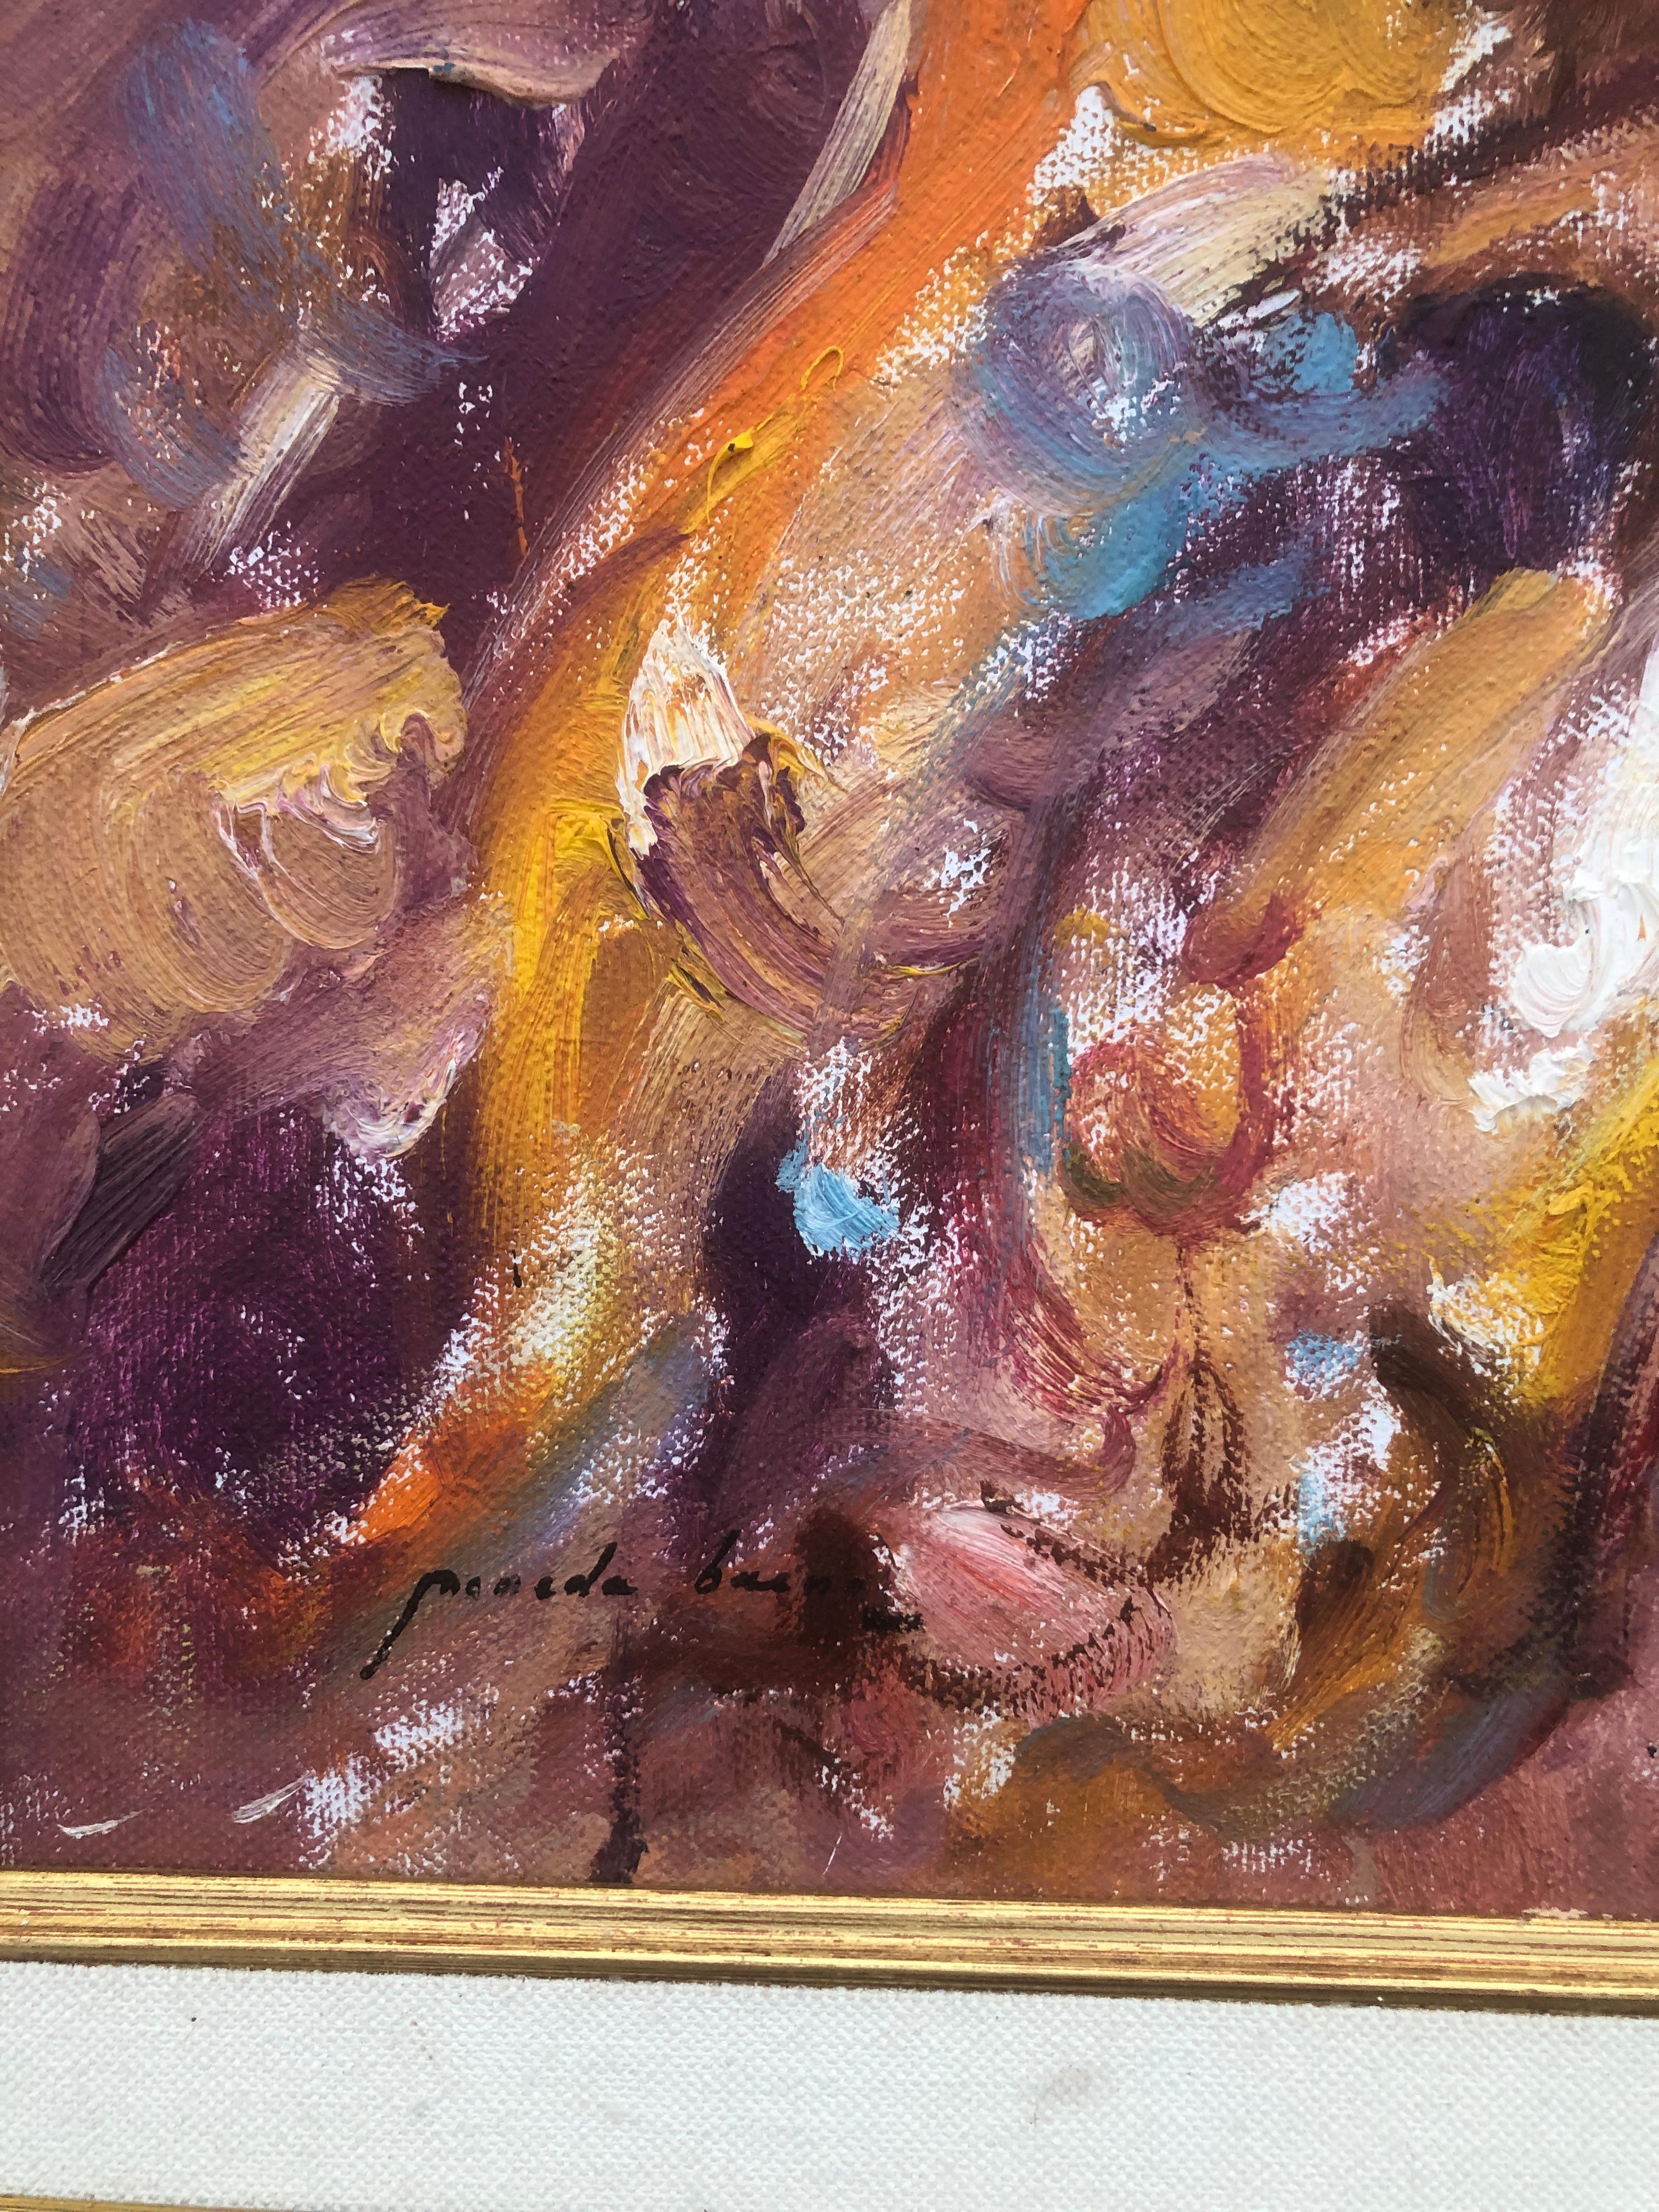 Woman by the sea huile sur toile peinture méditerranéenne  - Post-impressionnisme Painting par Jose Antonio Pineda Bueno